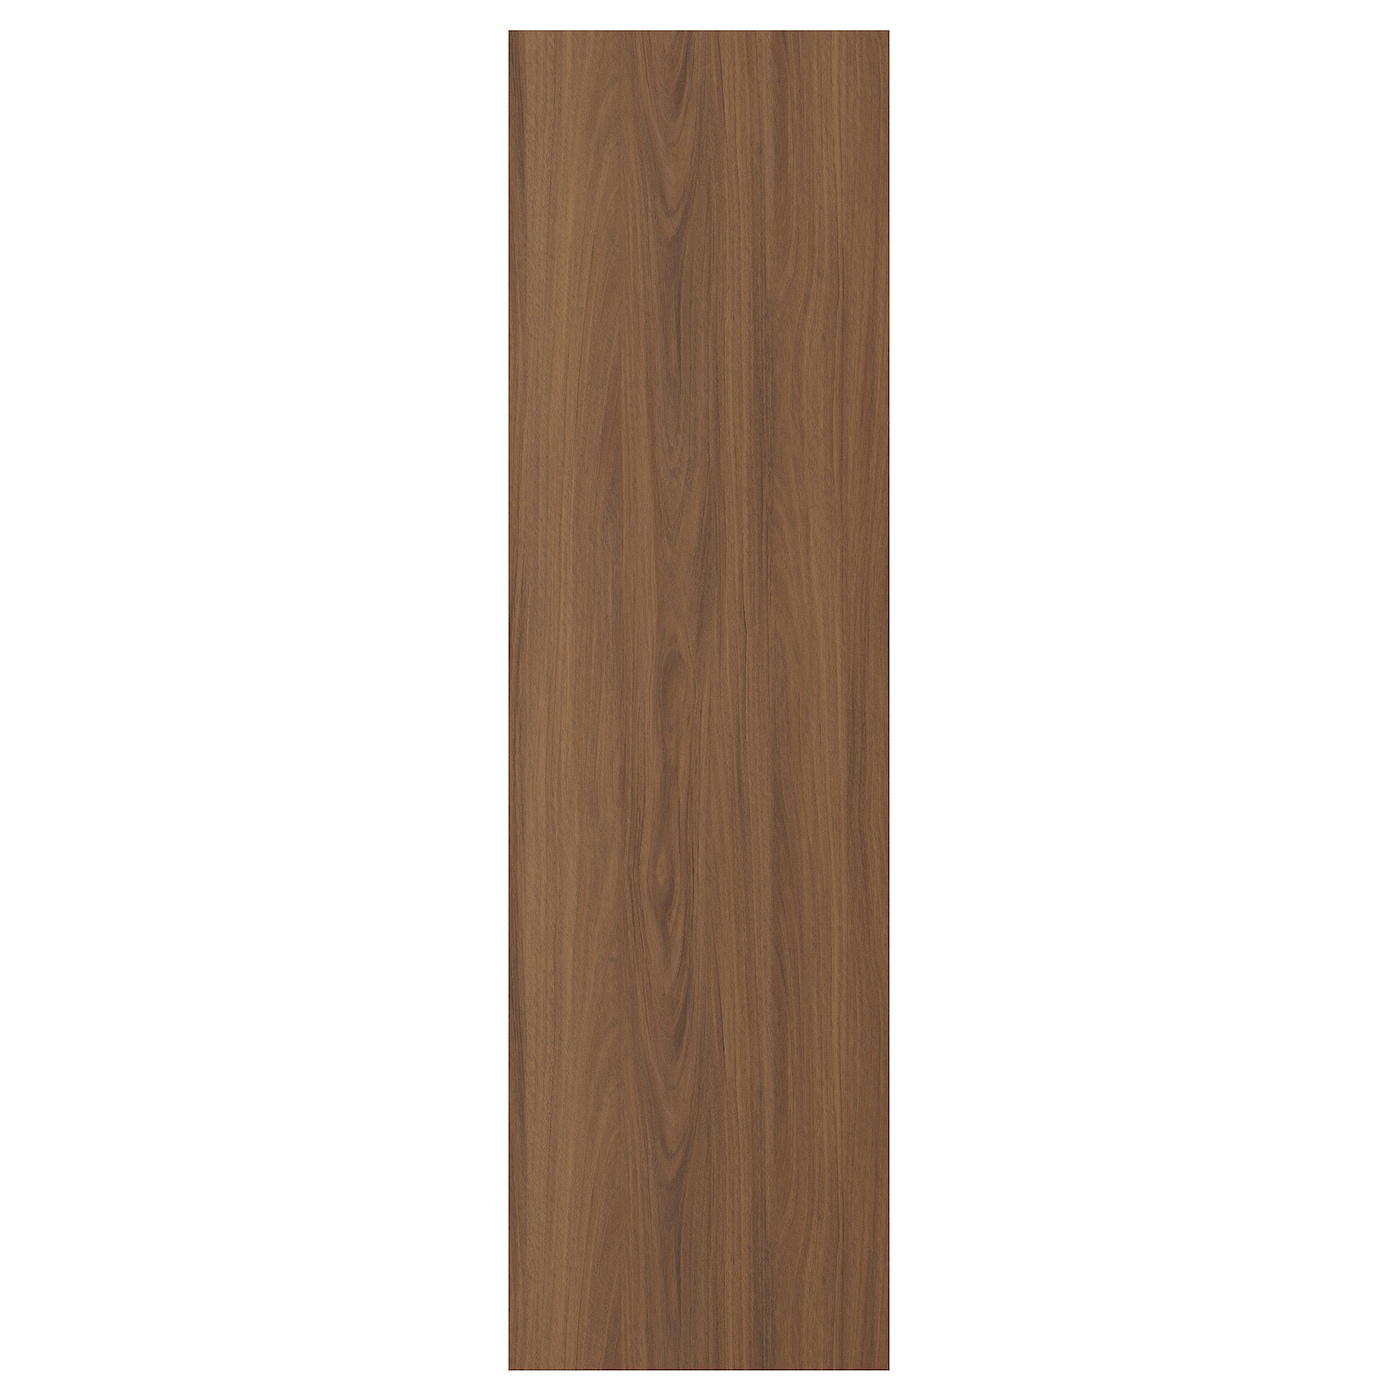 Дверца  - TISTORP IKEA/ ТИСТОРП ИКЕА,  140х40 см, коричневый